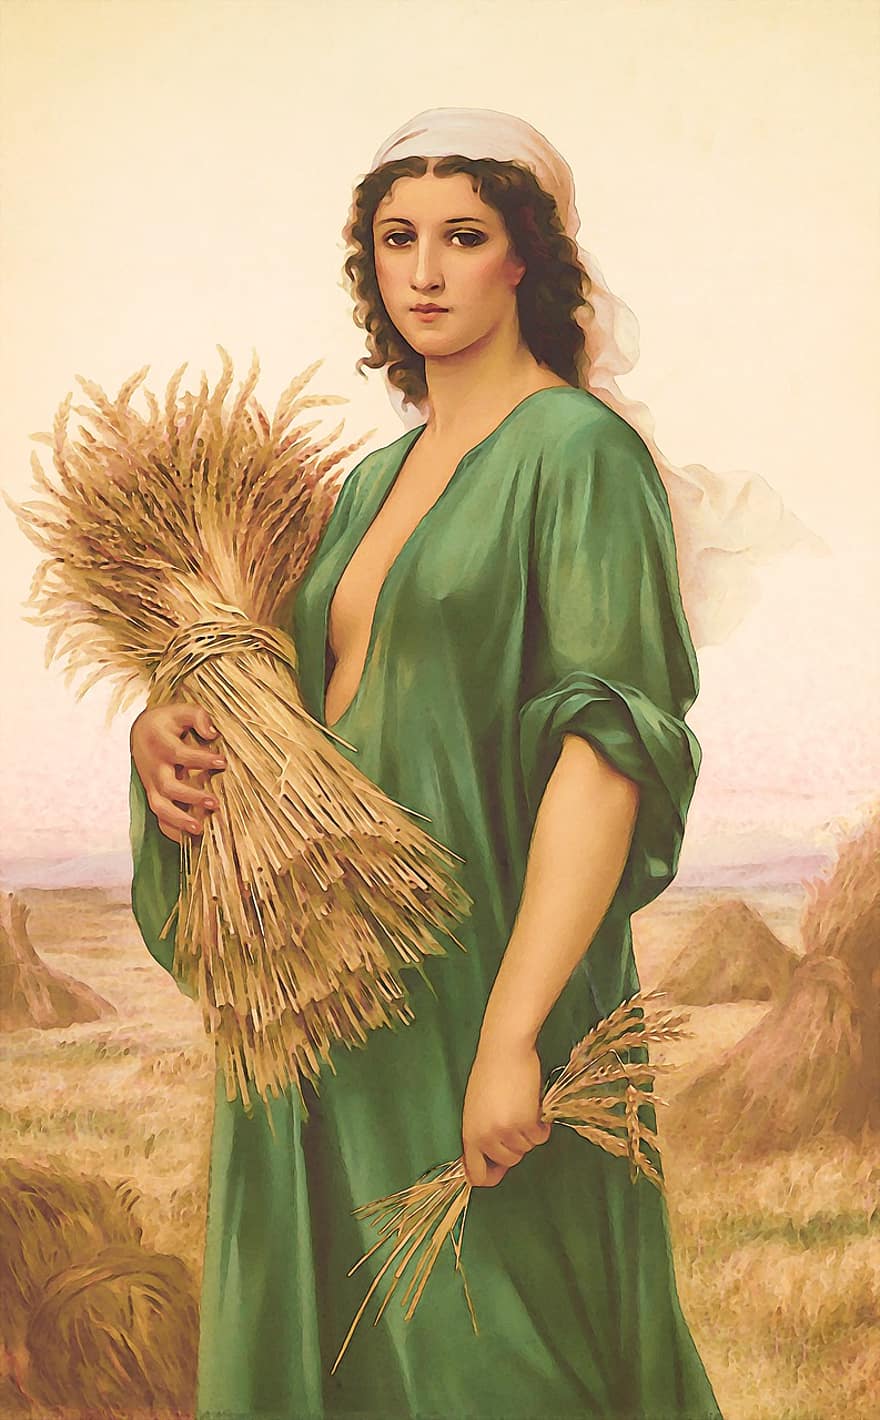 đàn bà, lúa mì, nông trại, cánh đồng, con gái, quý bà, tóc nâu, nông nghiệp, nông phu, ngoài trời, áo choàng